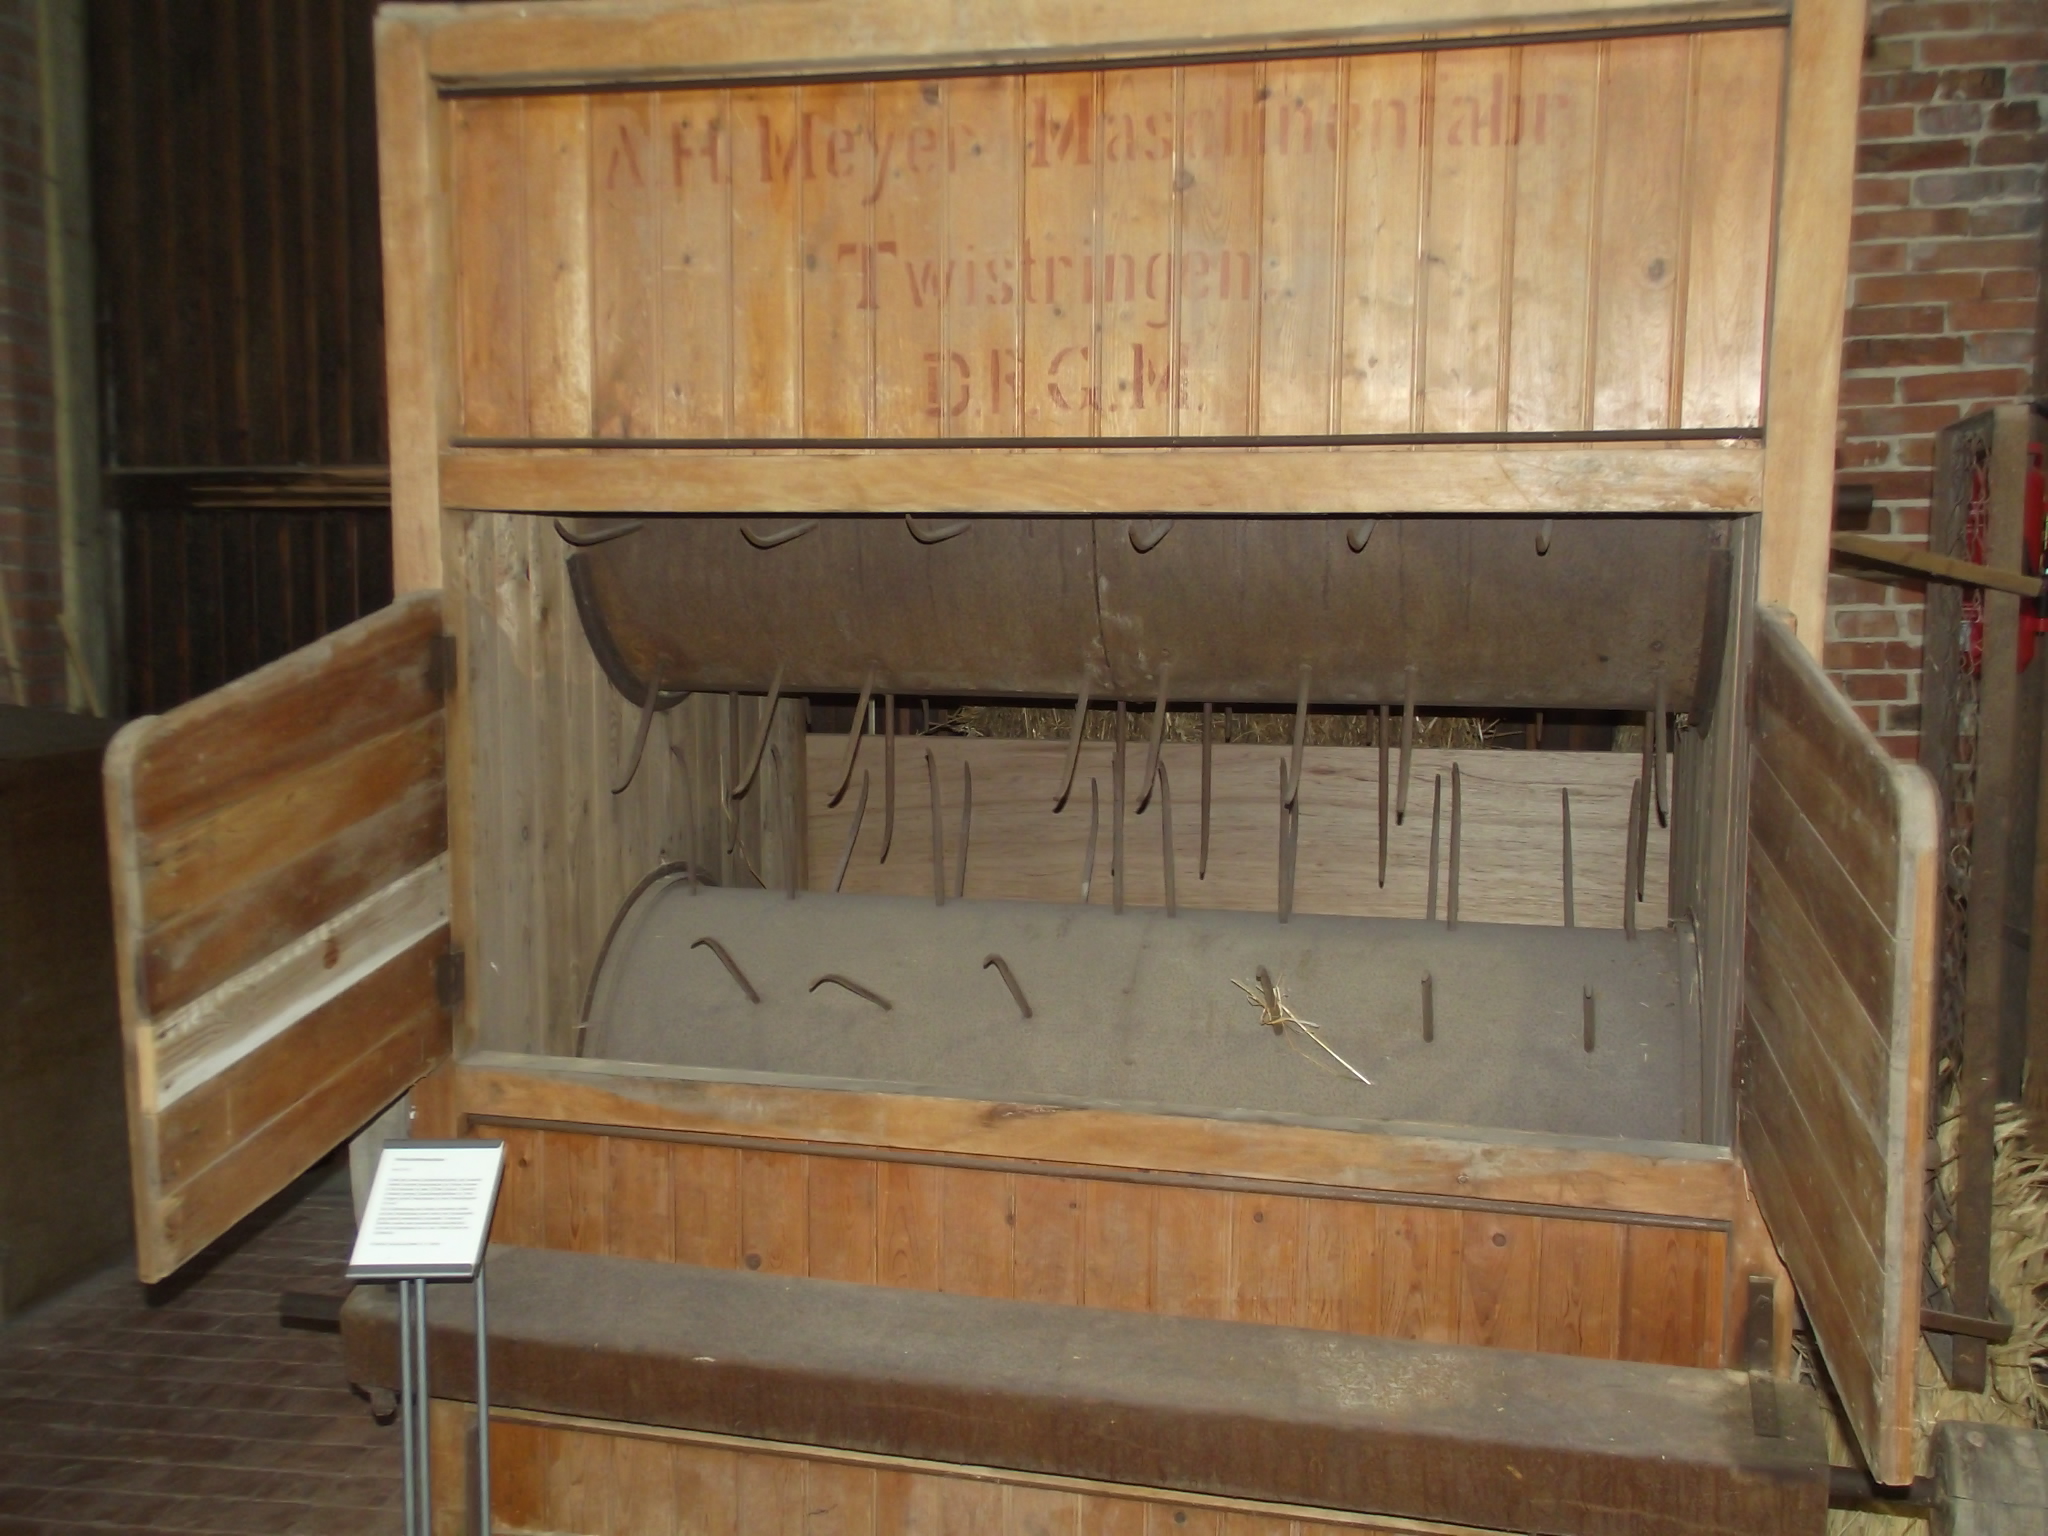 Im Museum der Strohverarbeitung in Twistringen - Austrage Maschine